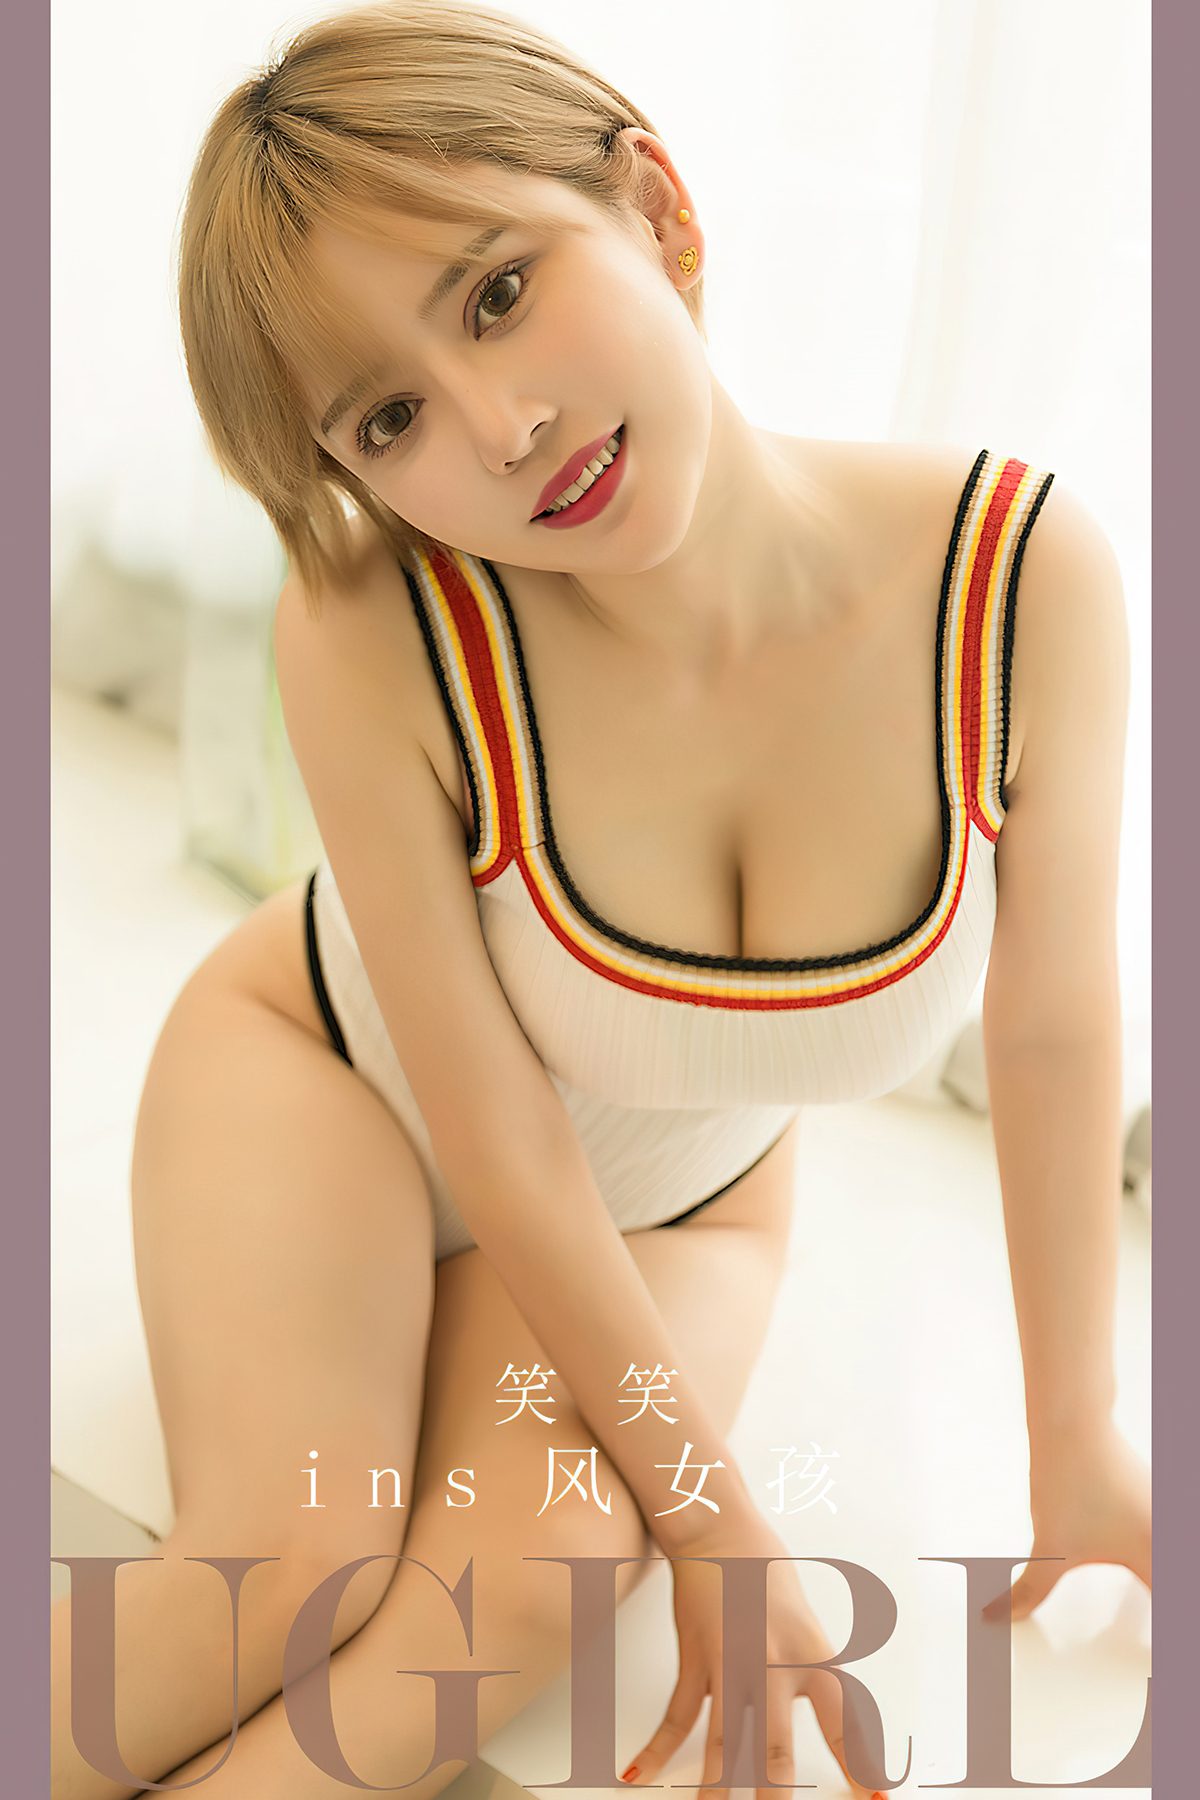 Ugirls App尤果圈 No 2700 Xiao Xiao 0027 2820798409.jpg